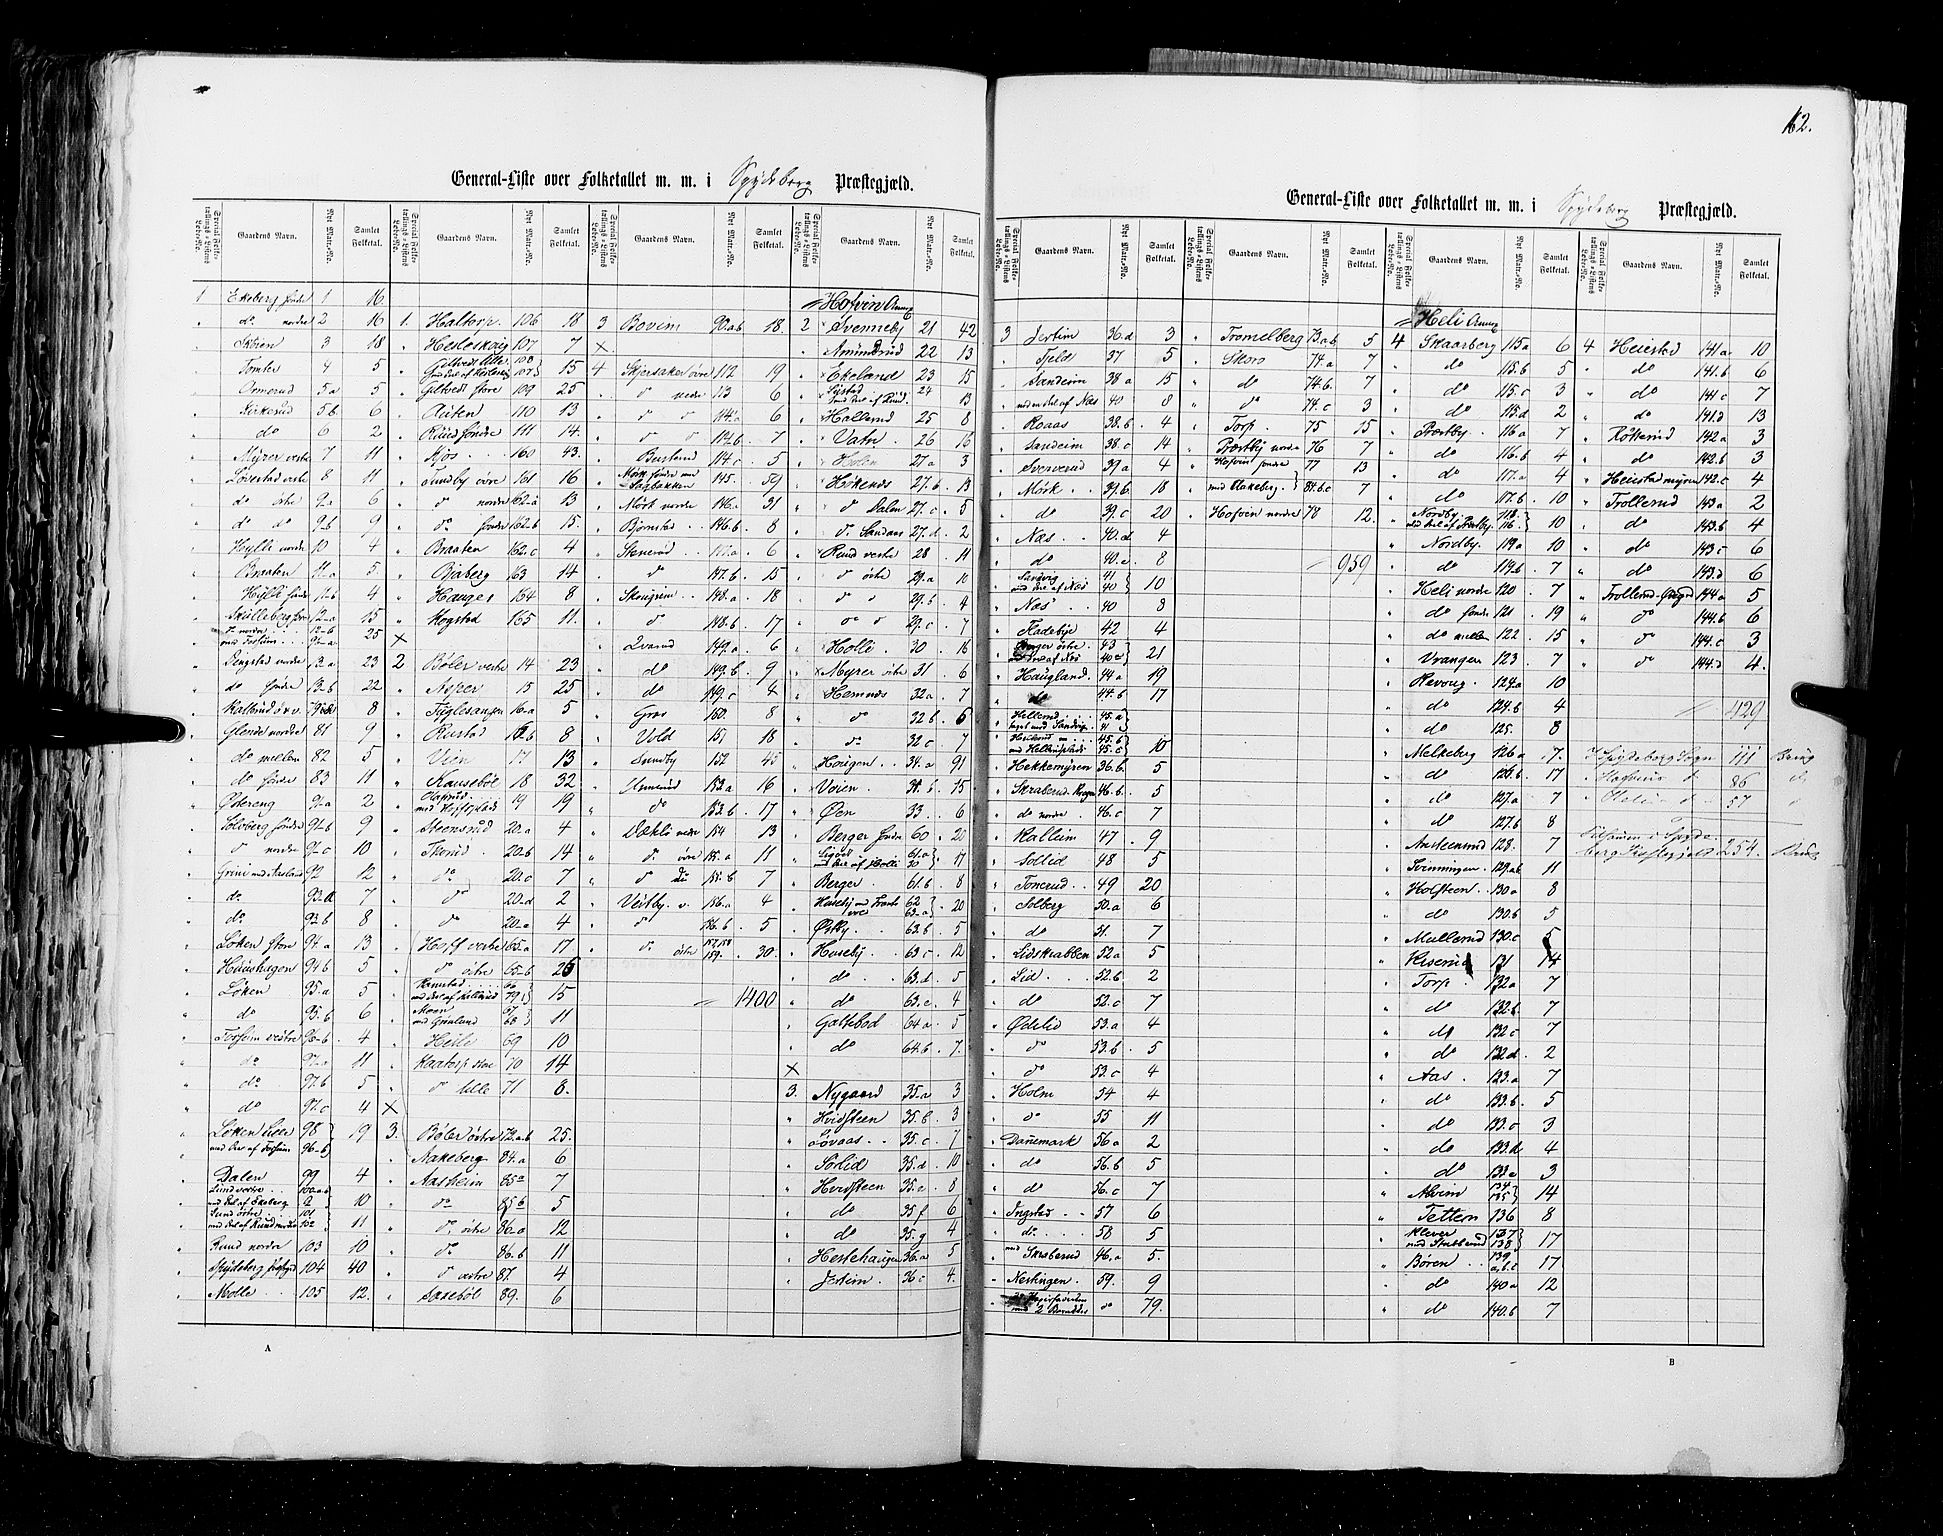 RA, Census 1855, vol. 1: Akershus amt, Smålenenes amt og Hedemarken amt, 1855, p. 162